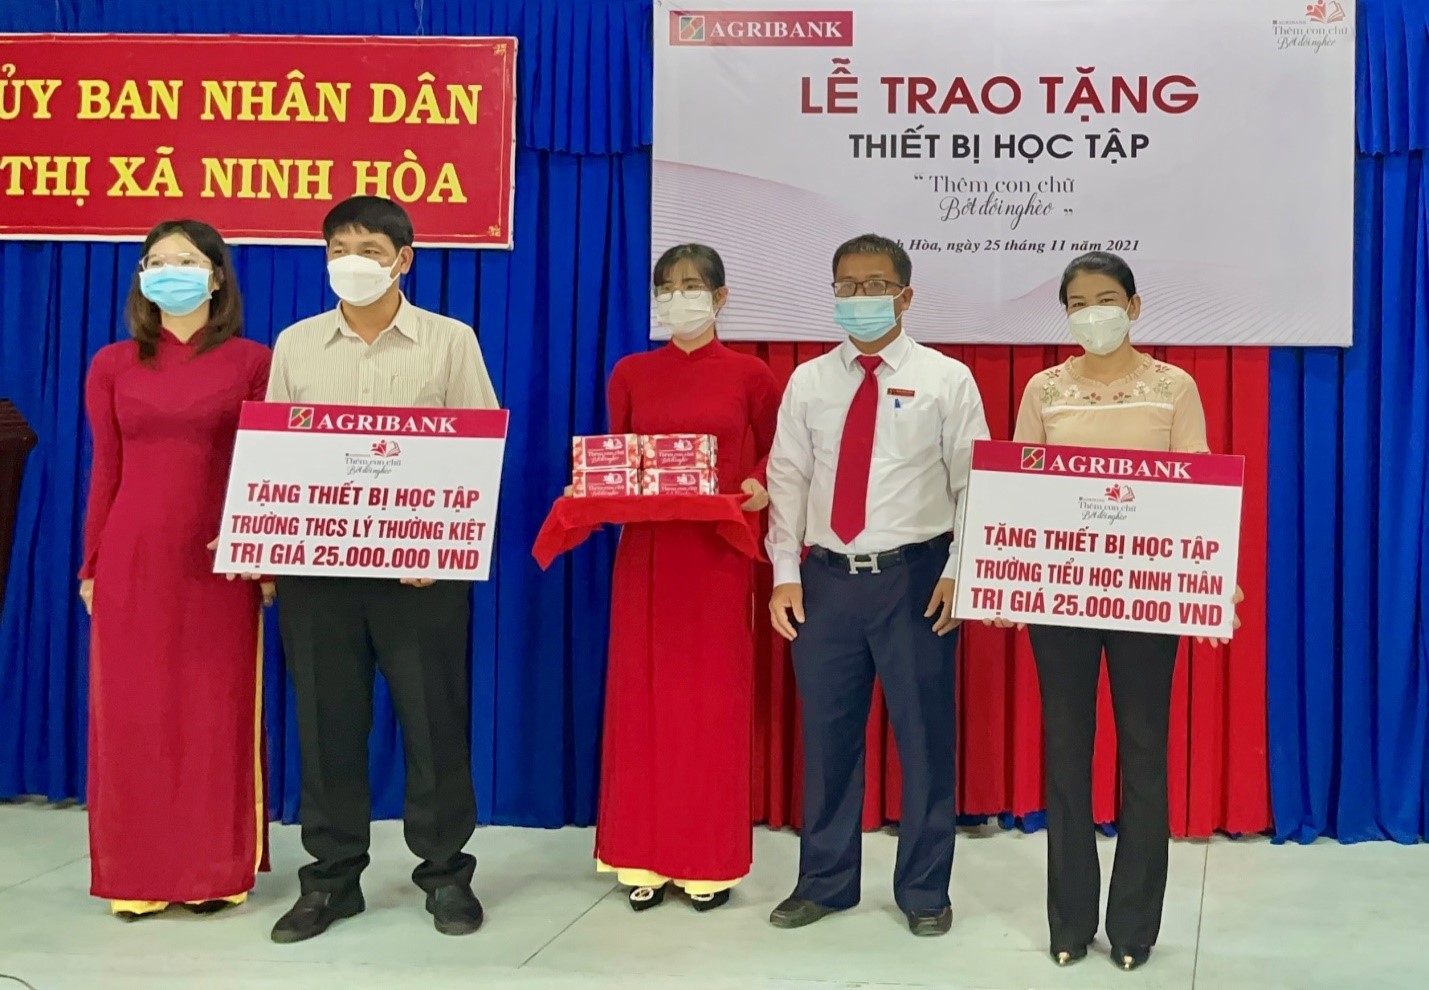 Ông Trần Công Sang - Giám đốc Agribank Chi nhánh thị xã Ninh Hòa trao tượng trưng cho lãnh đạo Trường THCS Lý Thường Kiệt và Trường Tiểu học Ninh Thân. 